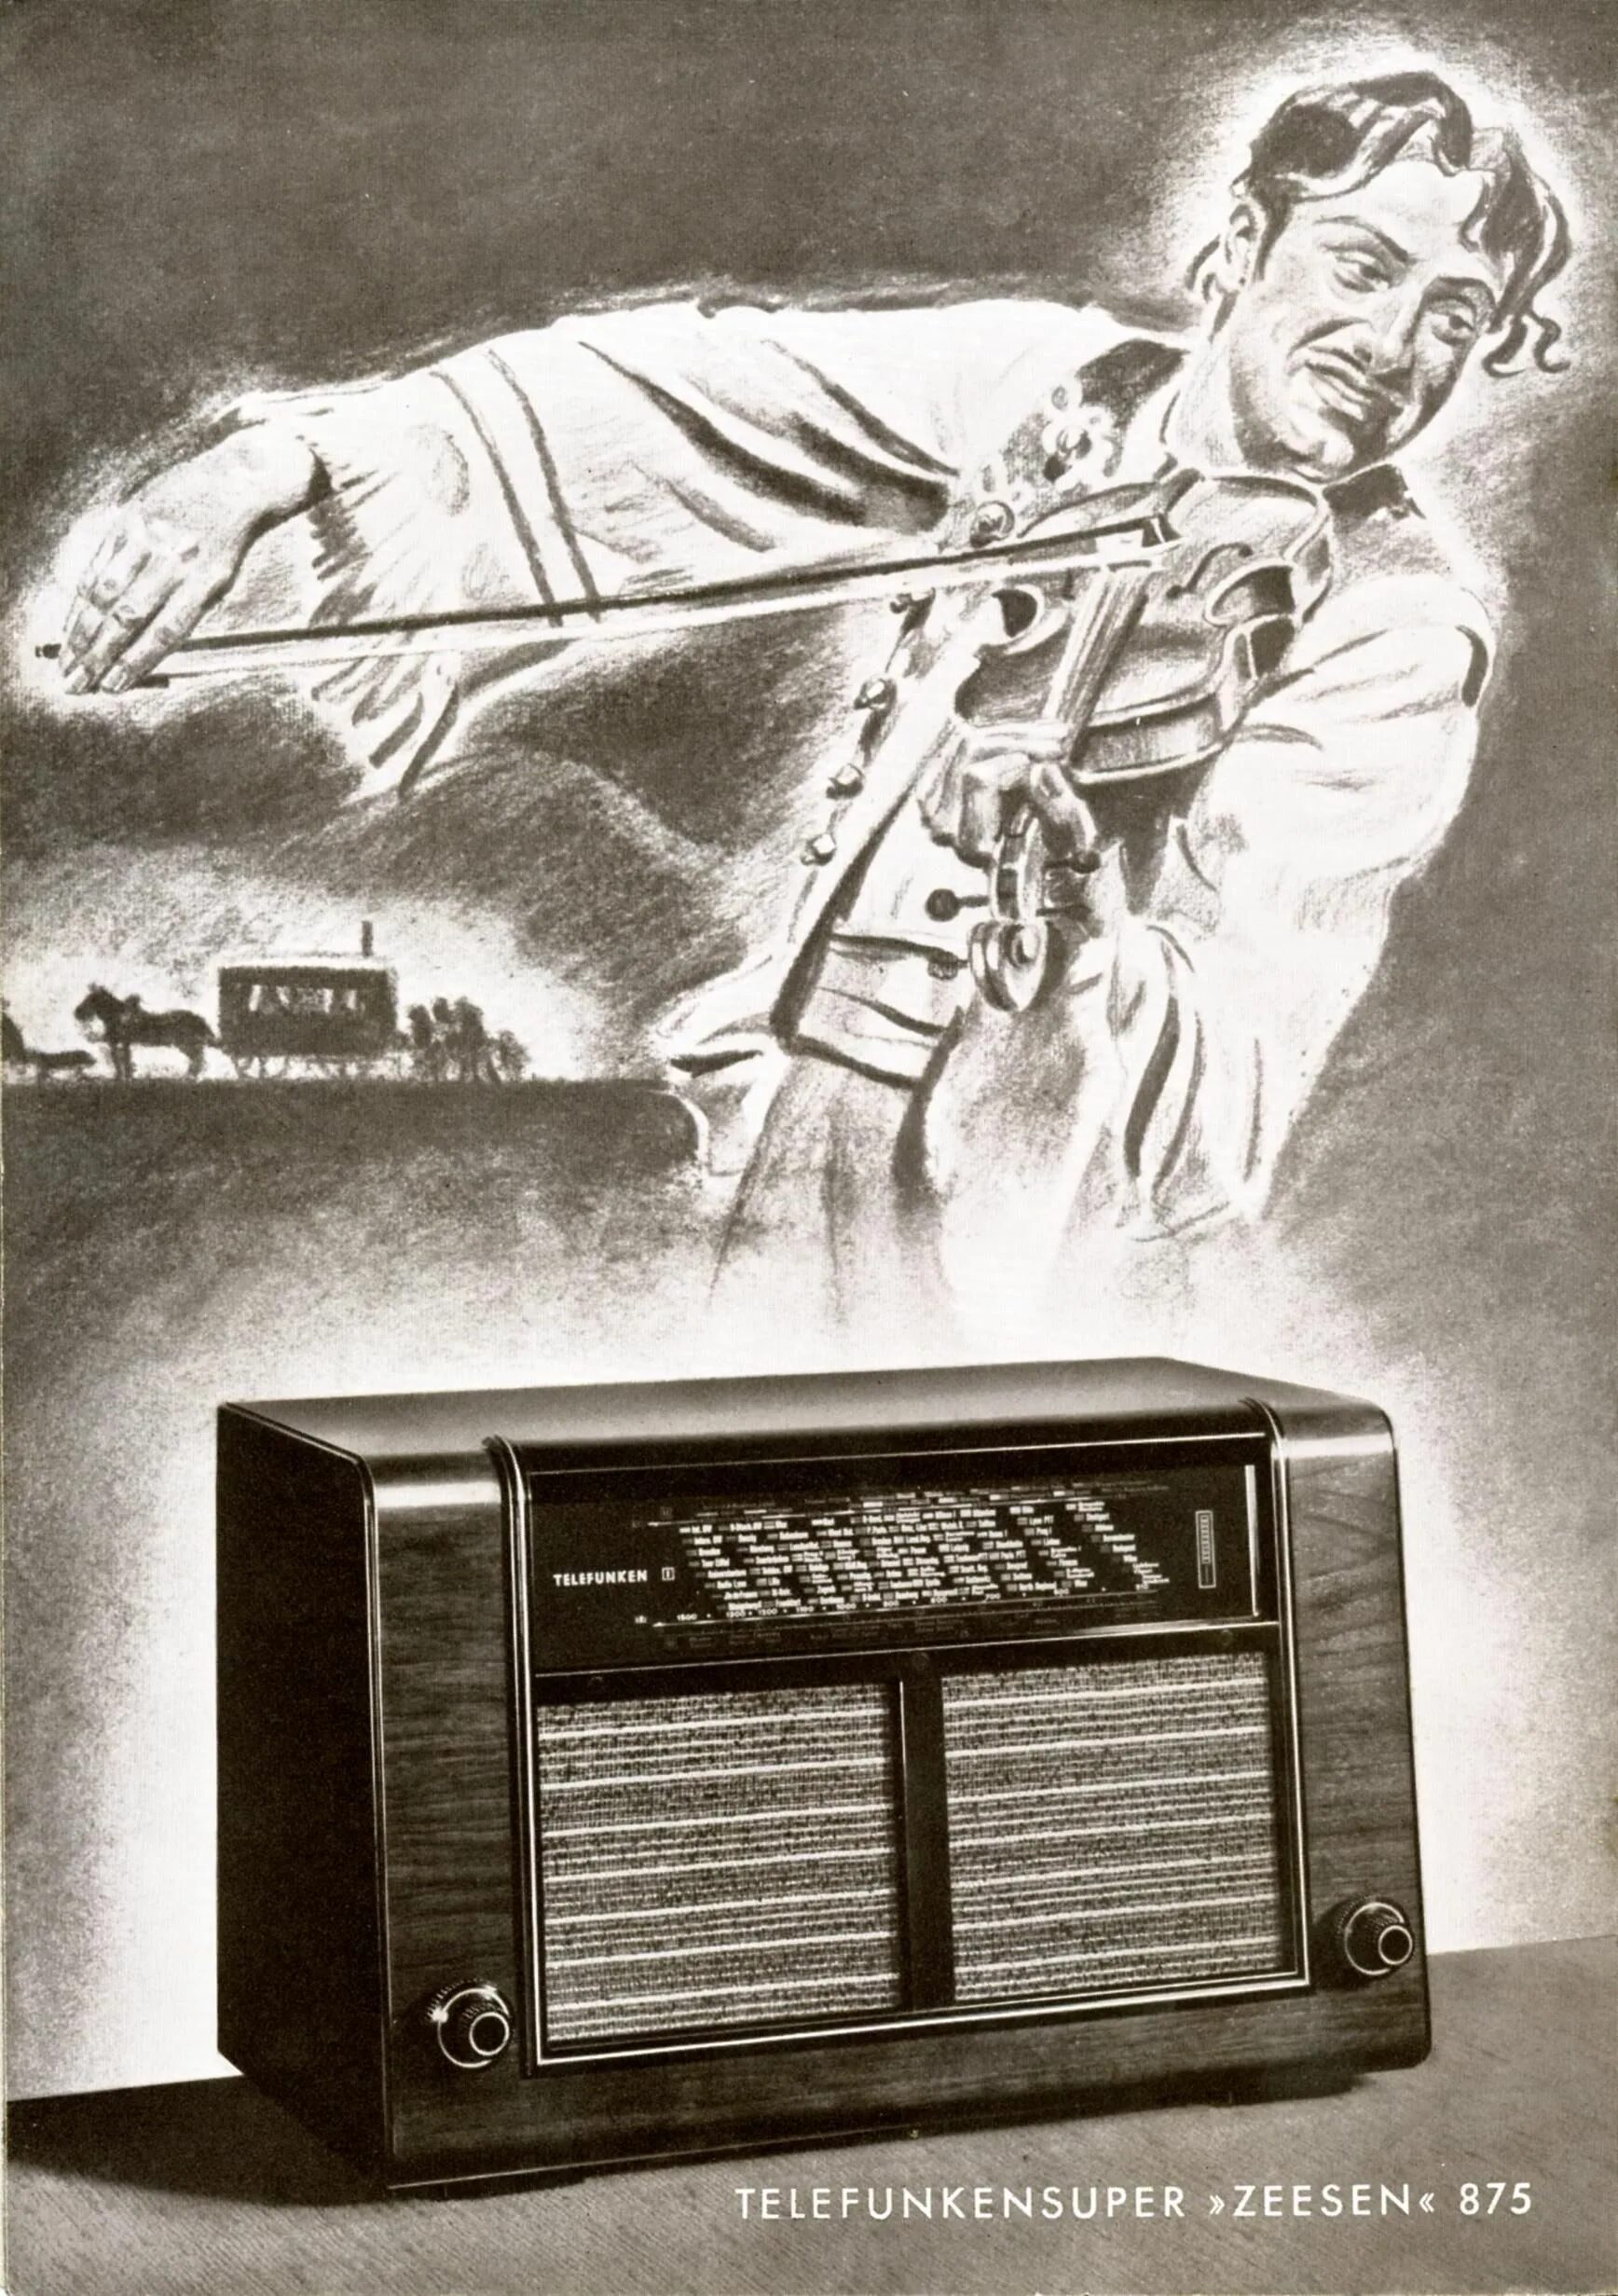 Прома радио. Радиоприемник Телефункен 30 годы. Телевизор Telefunken 1938 года. Радиоприемник Телефункен 1960. Реклама радиоприемника.